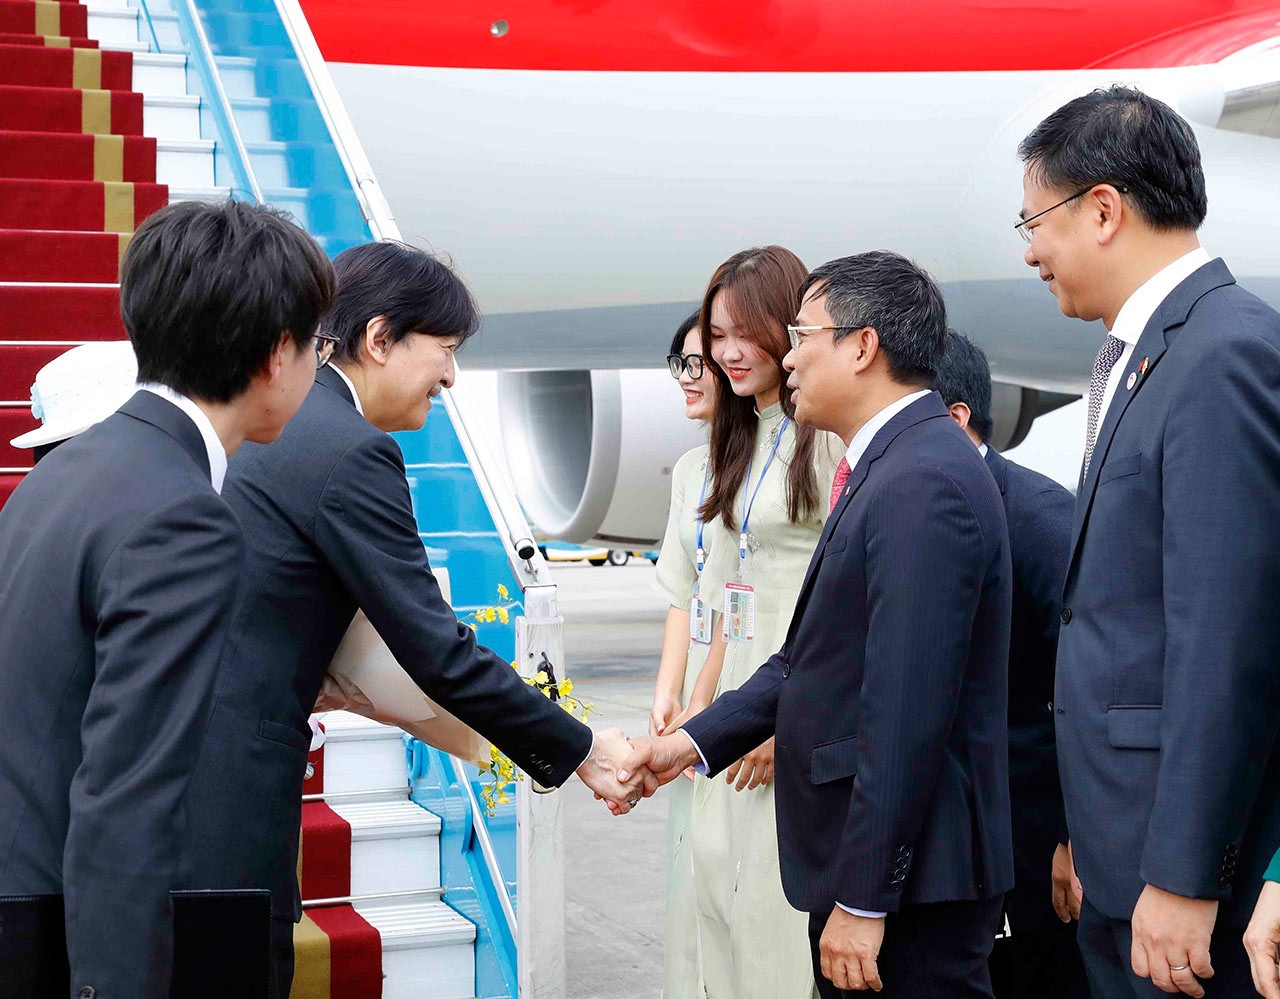 Trước đó, chiều 20/9, Hoàng Thái tử Nhật Bản Akishino và Công nương Kiko đến Thủ đô Hà Nội, bắt đầu chuyến thăm chính thức Việt Nam trong dịp hai nước Kỷ niệm 50 năm thiết lập quan hệ ngoại giao (1973-2023). 